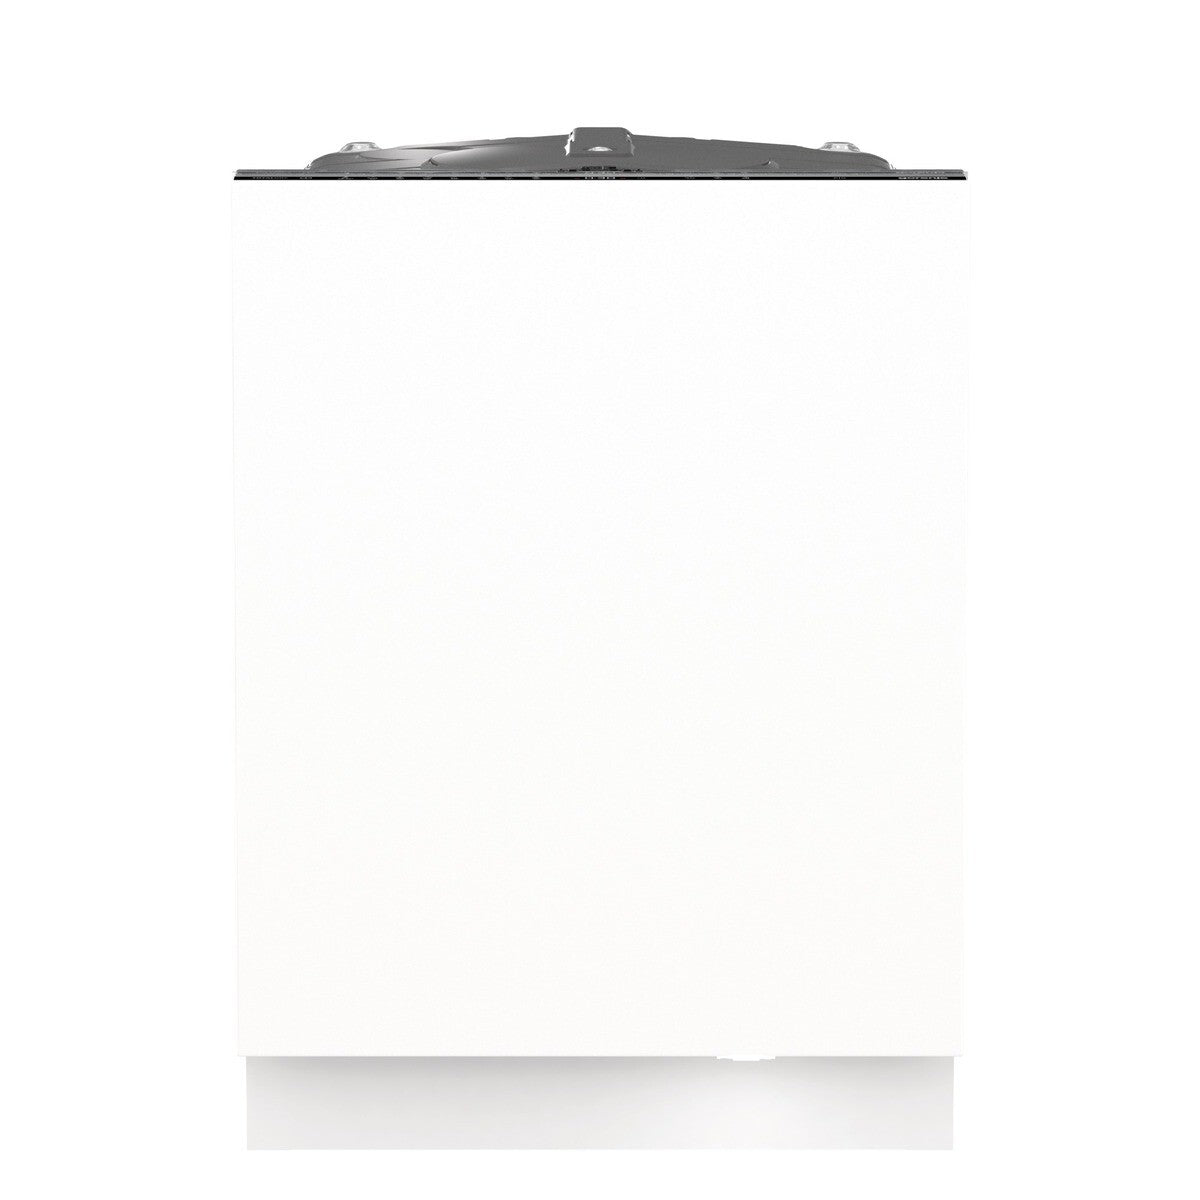 Vstavaná umývačka riadu Gorenje GV662D61, 60 cm, 14 sád